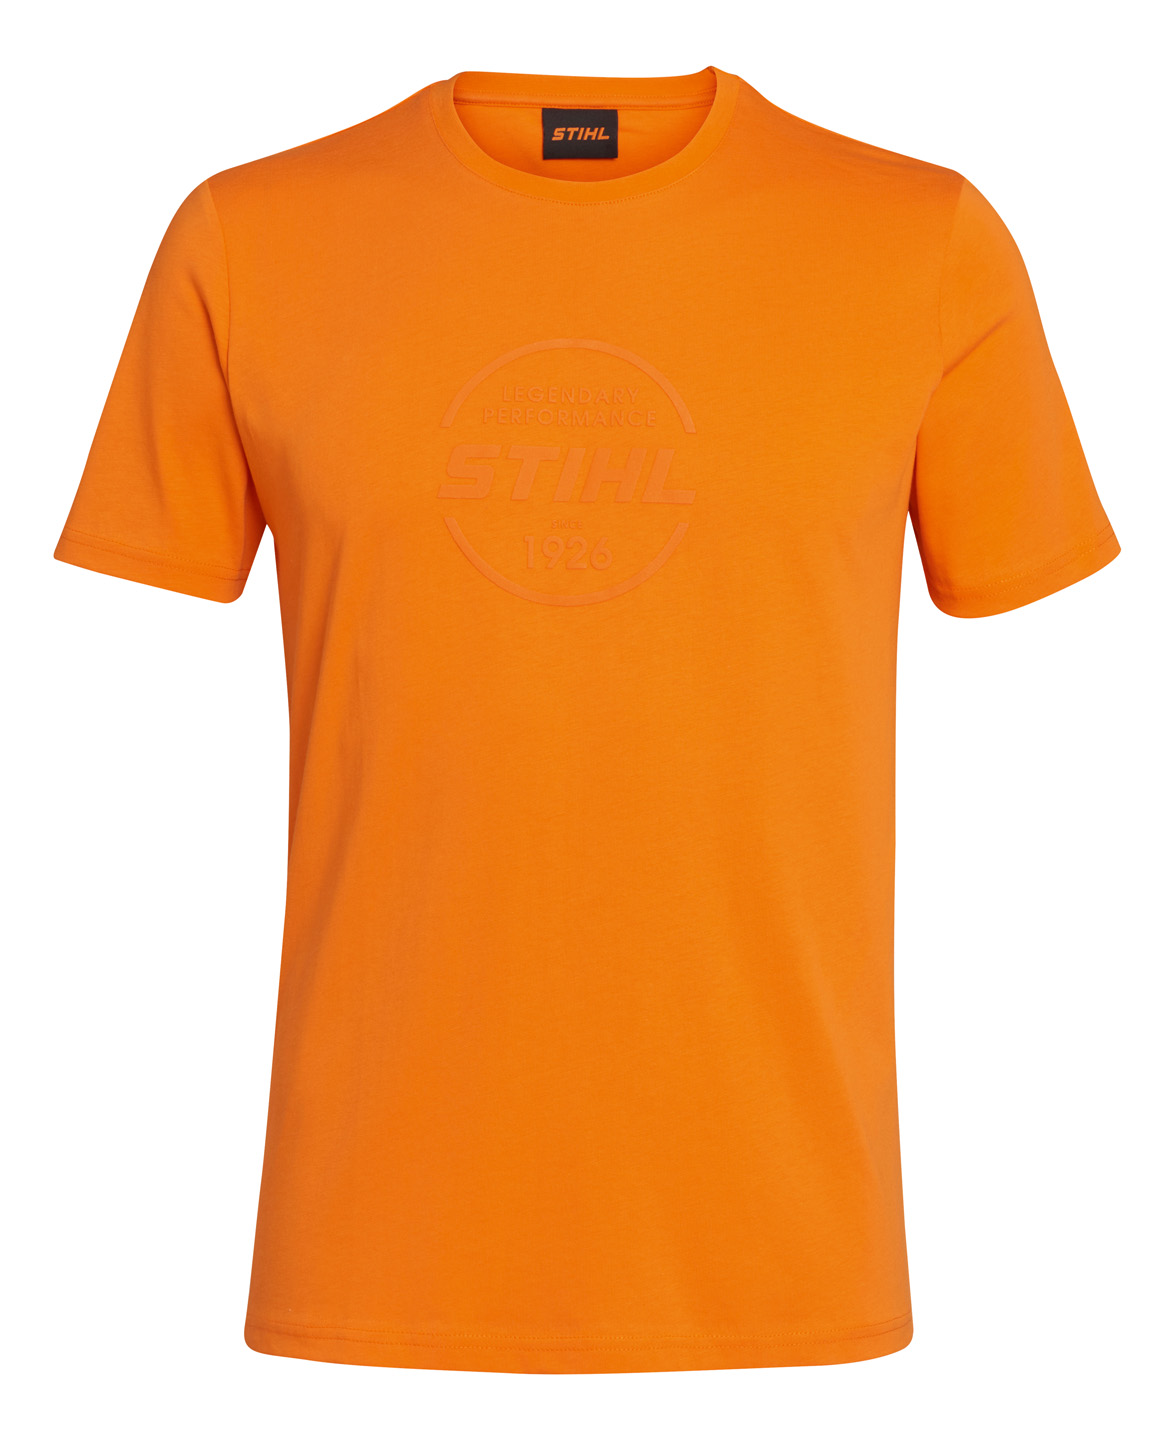 T-shirt LOGO CIRCLE orange